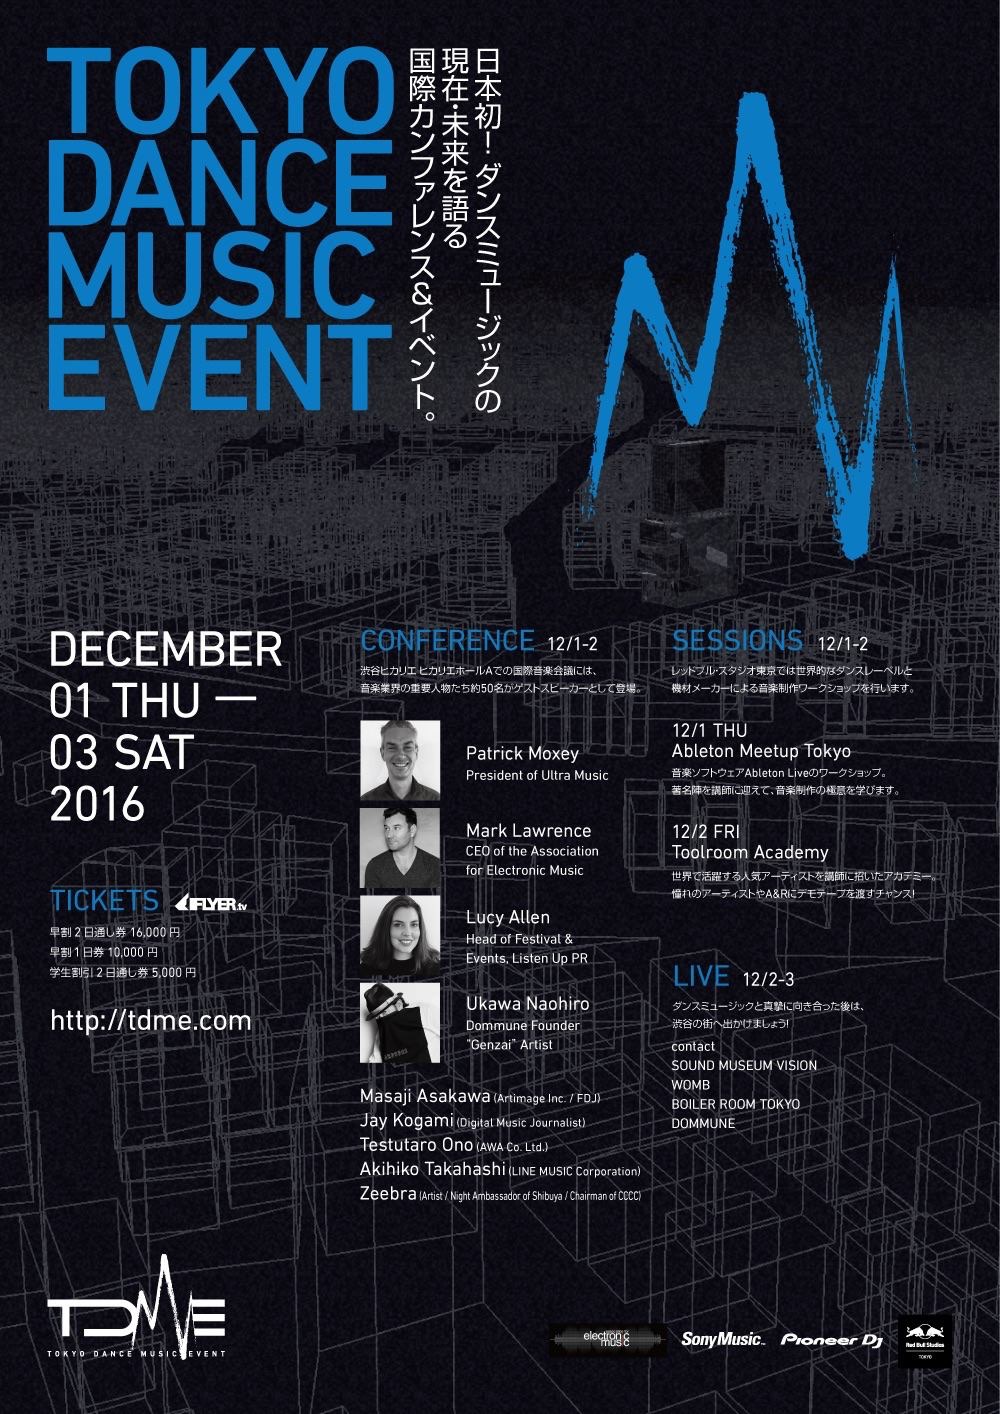 16年に音楽業界で注目を集めた日本初のダンスミュージックカンファレンス Tokyo Dance Music Event が今年も開催 Mnn